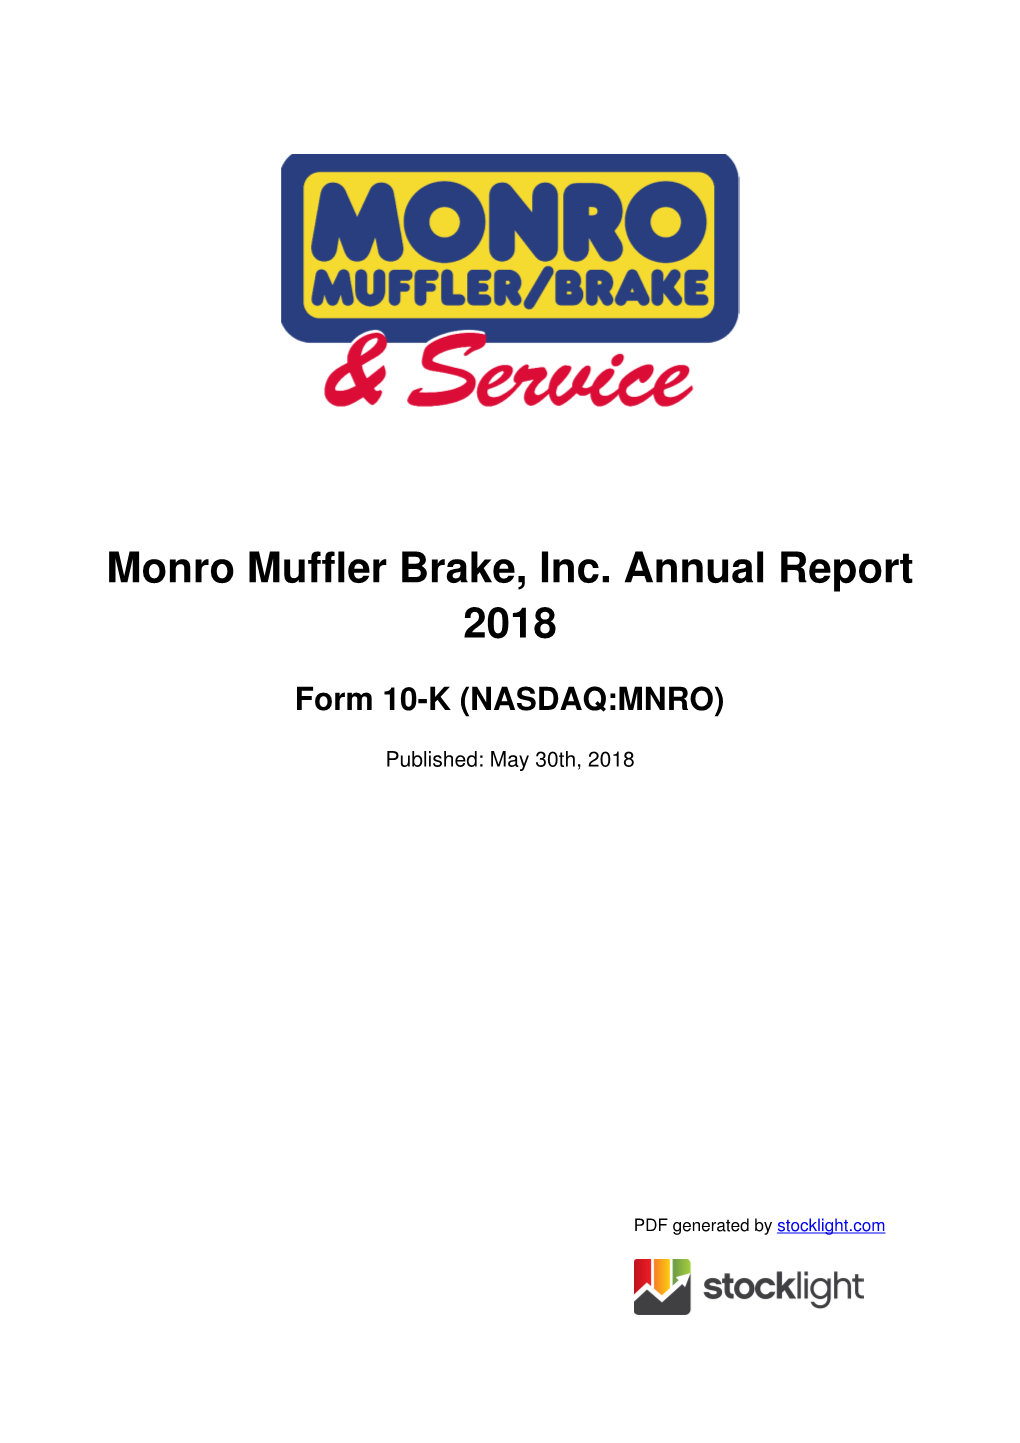 Monro Muffler Brake, Inc. Annual Report 2018